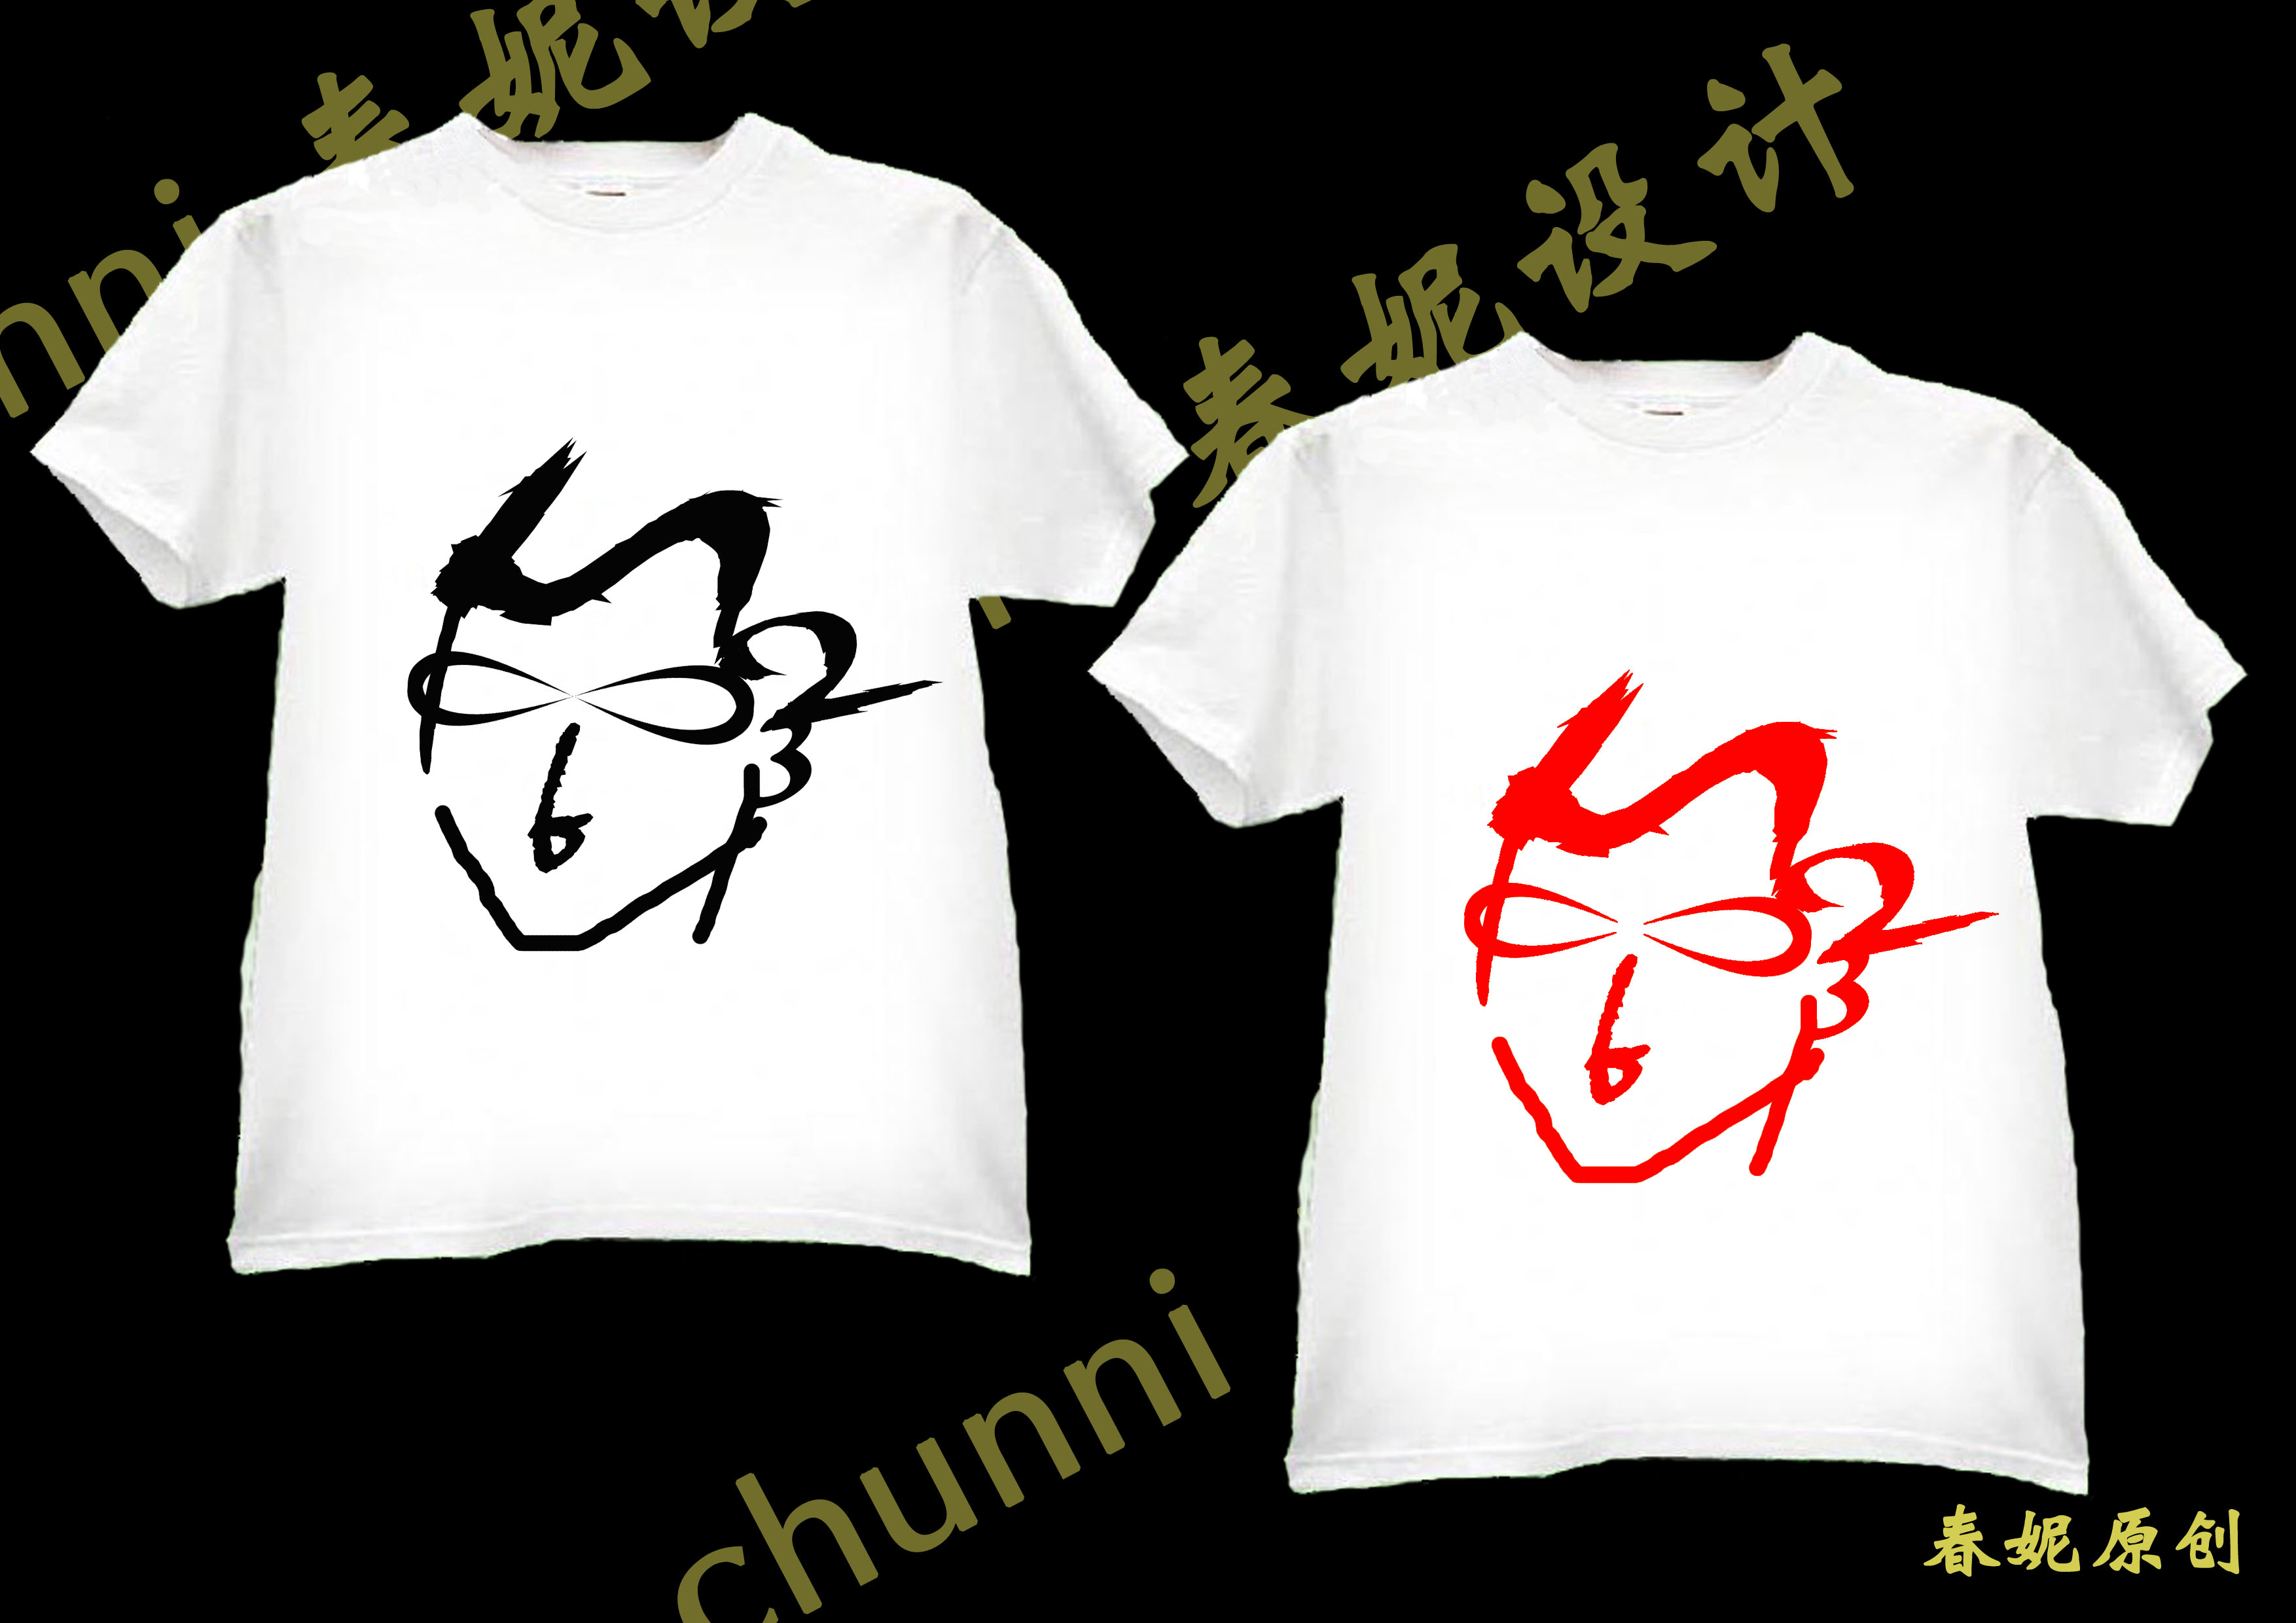 5个t恤衫图案设计(投票处理:鸿鹏 chenhonhon,4334uf65)